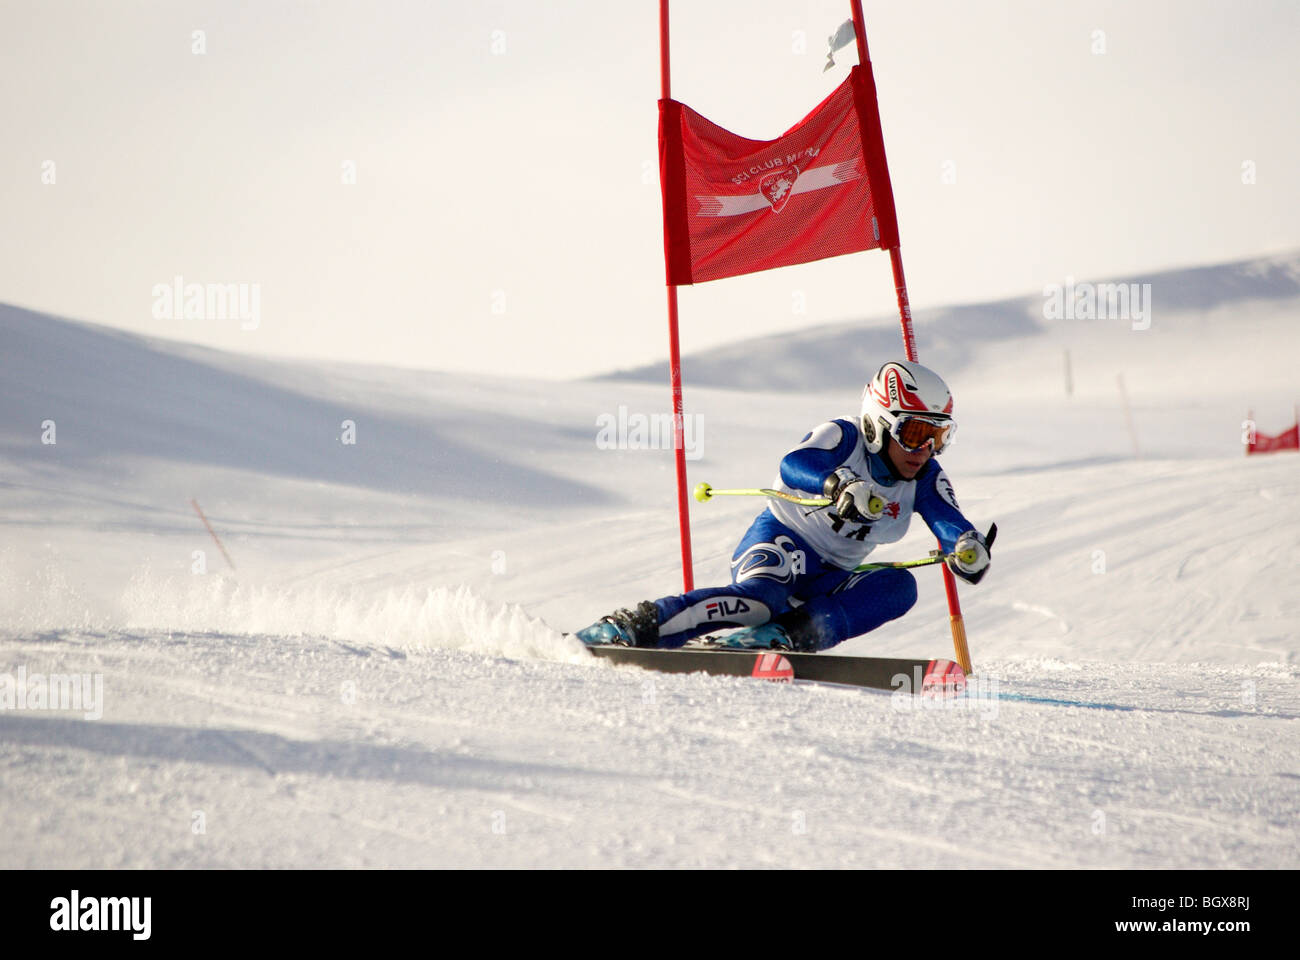 Gara di sci, atleta curva nei pressi del polo Foto Stock